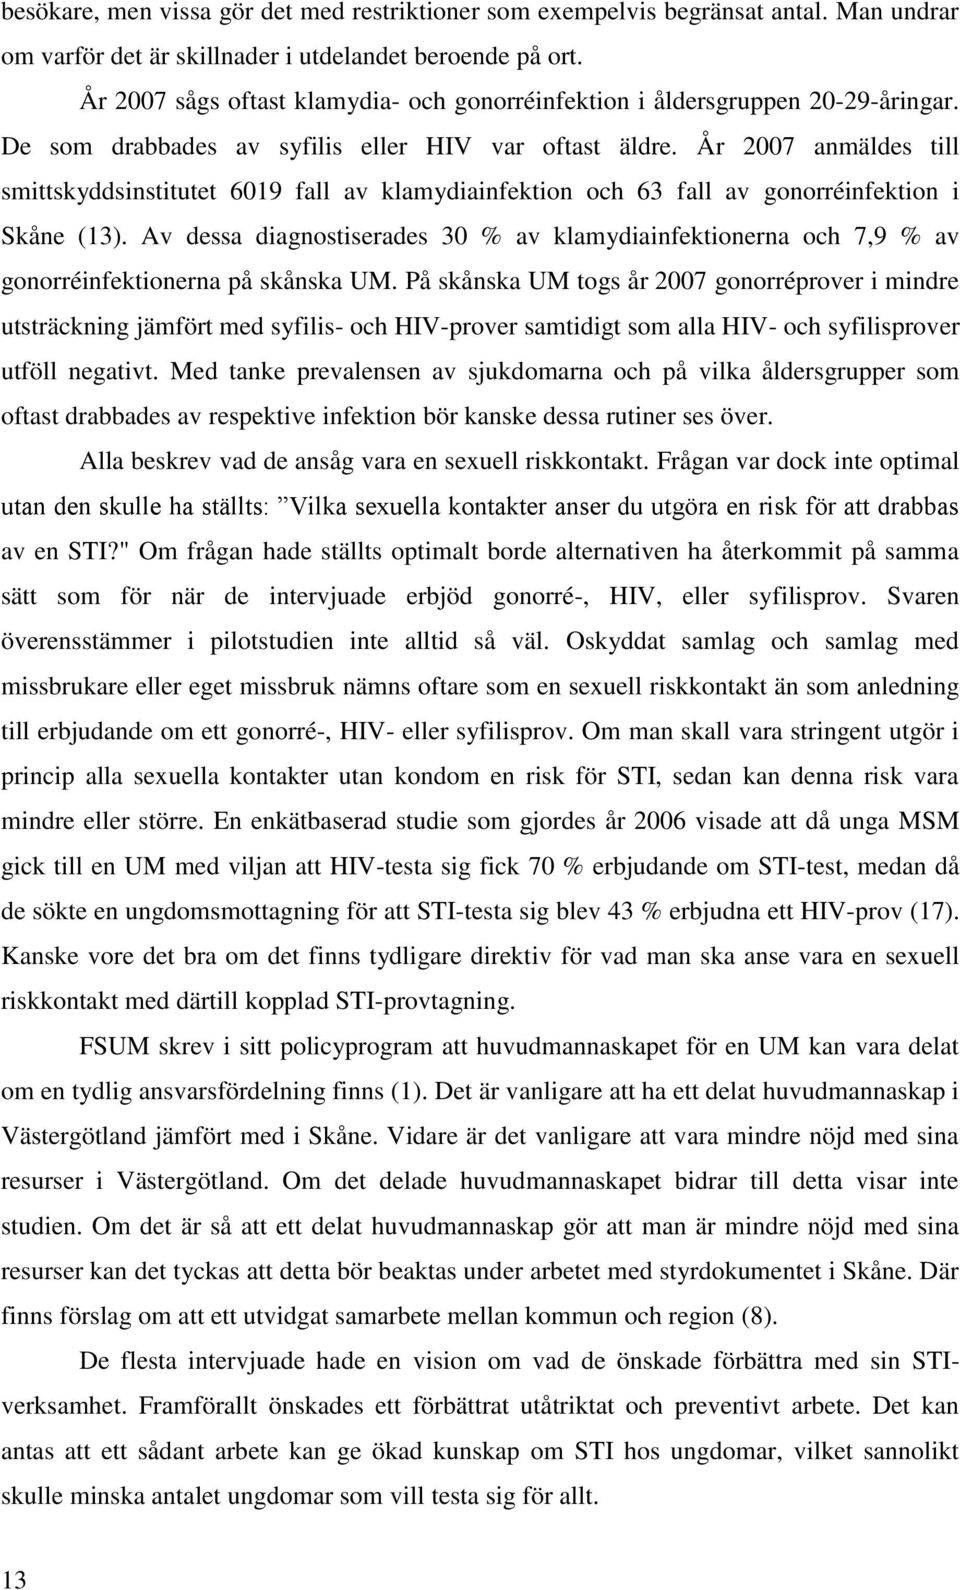 År 2007 anmäldes till smittskyddsinstitutet 6019 fall av klamydiainfektion och 63 fall av gonorréinfektion i Skåne (13).